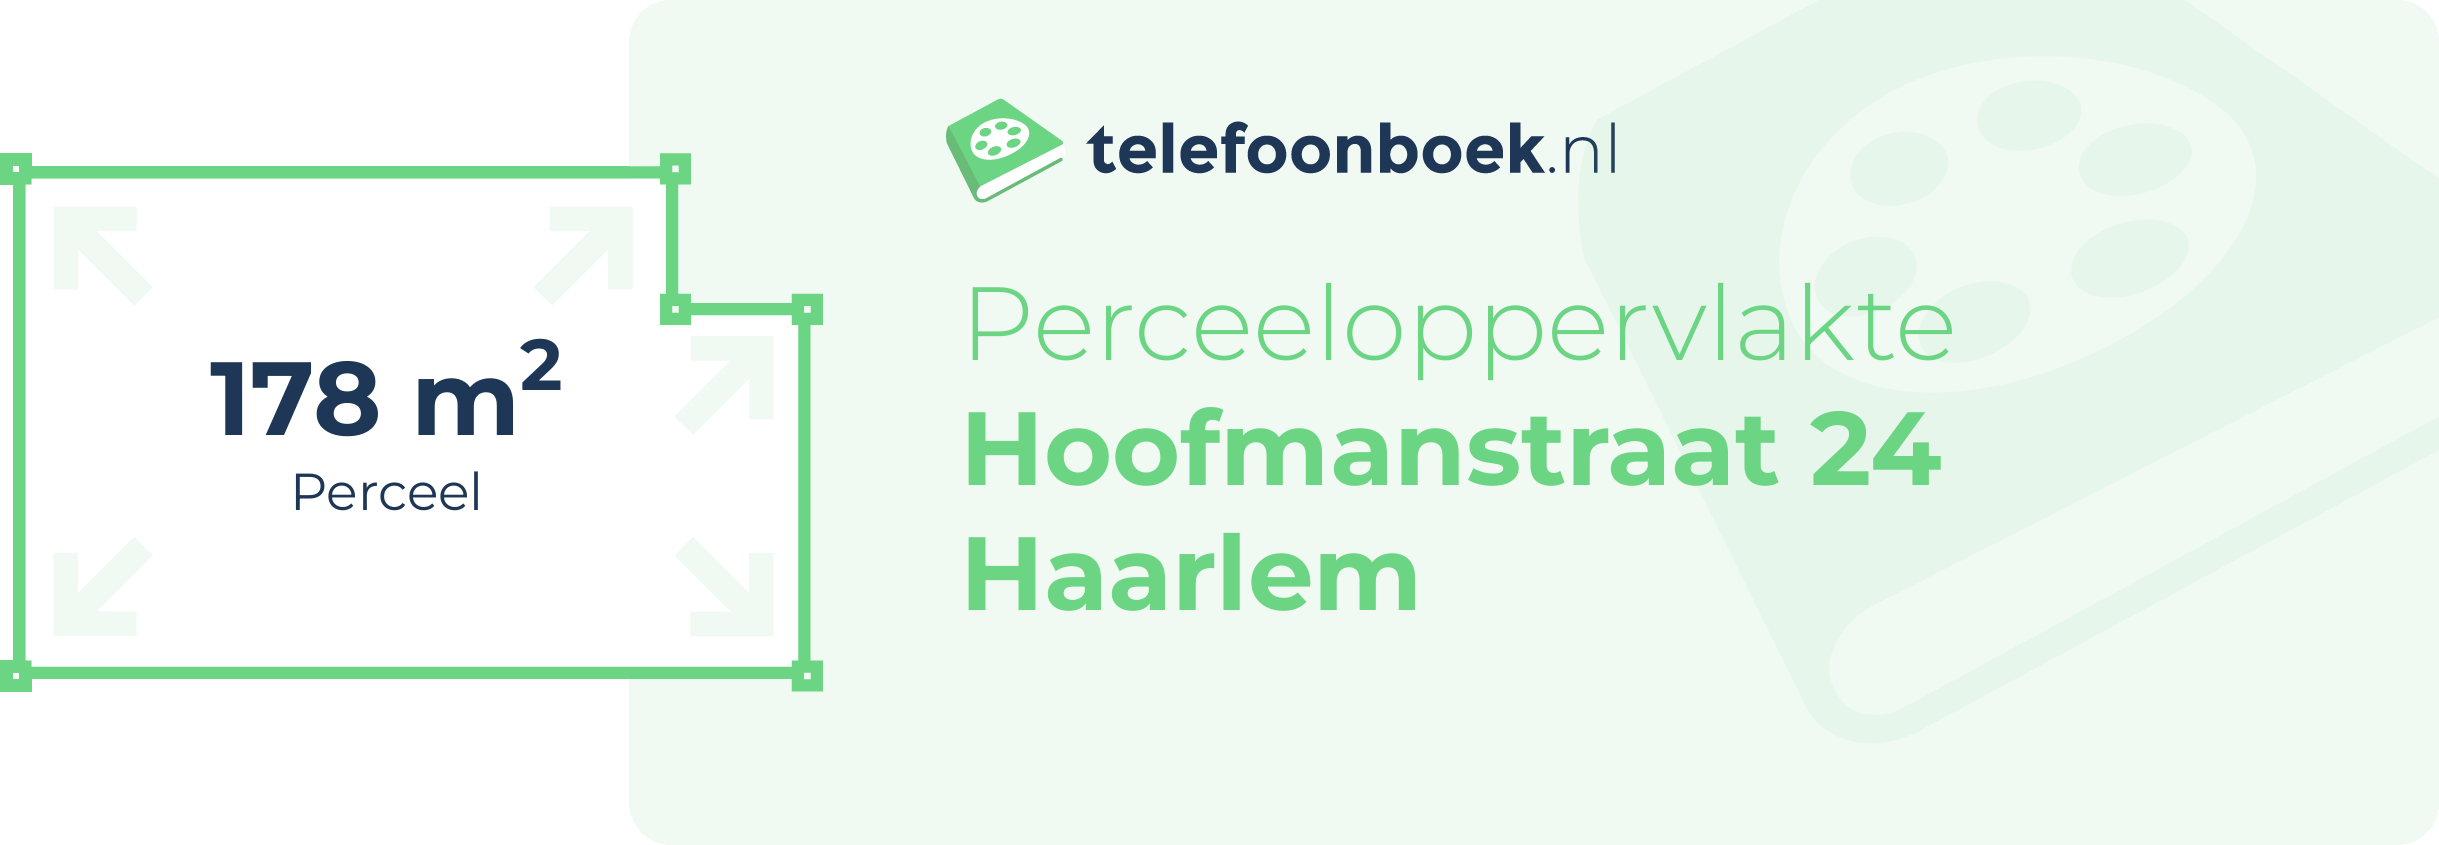 Perceeloppervlakte Hoofmanstraat 24 Haarlem